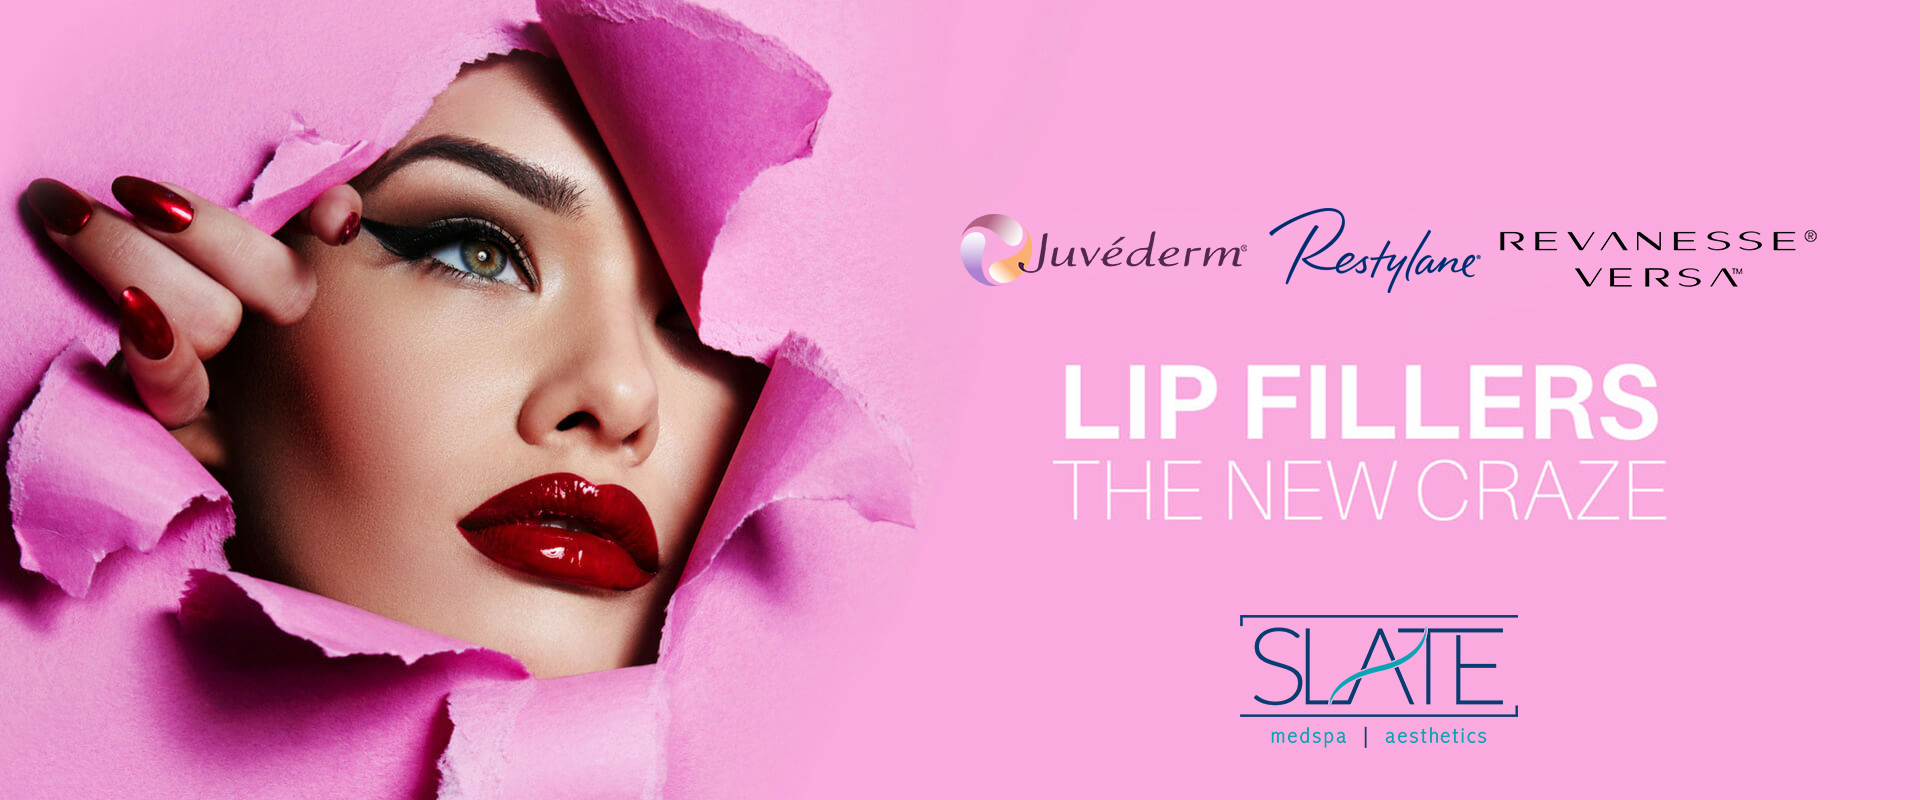 lip-fillers-new-logos.slatemedspa-v2